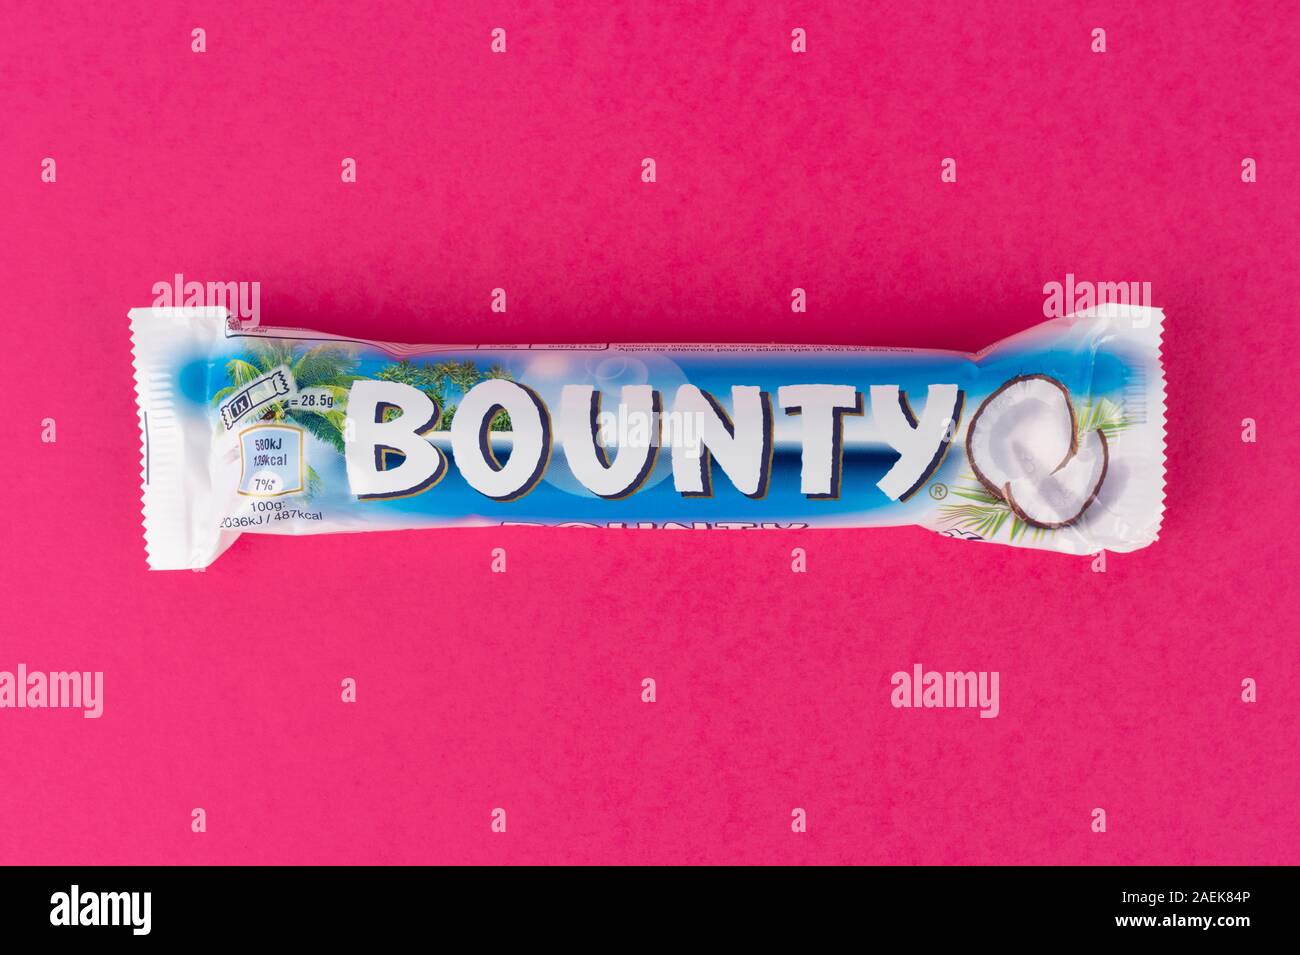 The Bounty Stockfotos und -bilder Kaufen - Alamy